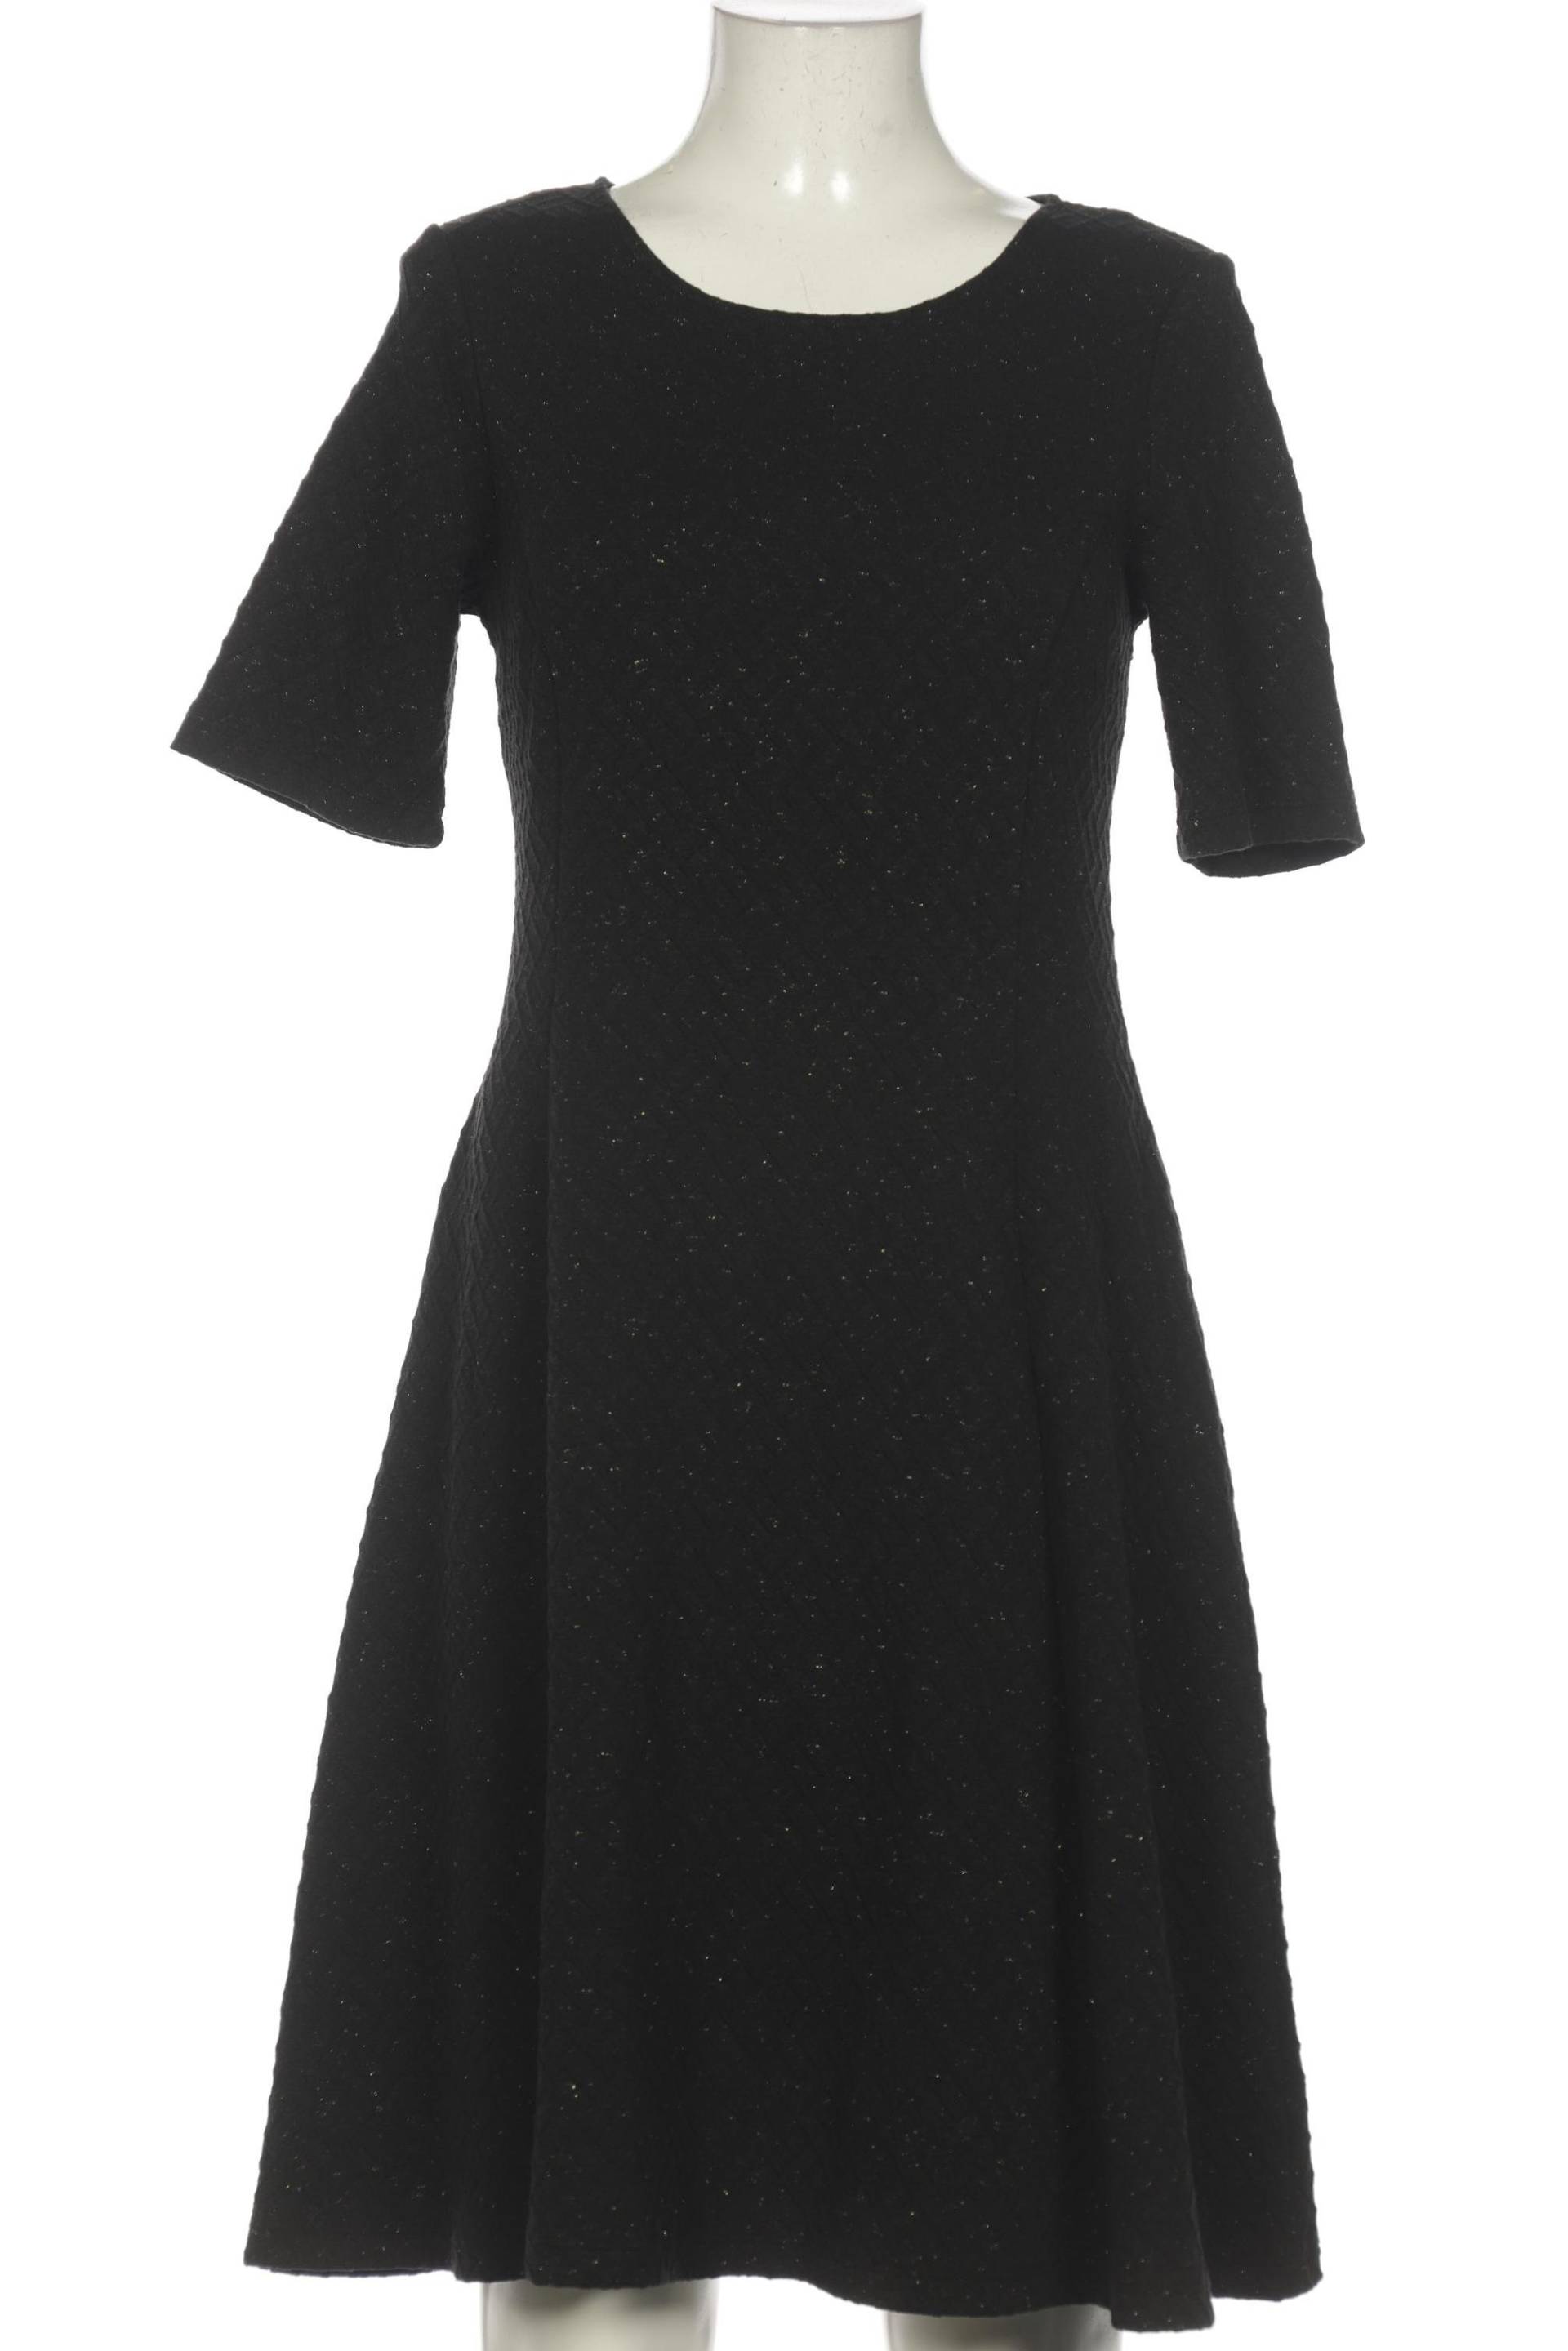 Qiero Damen Kleid, schwarz, Gr. 38 von Qiero